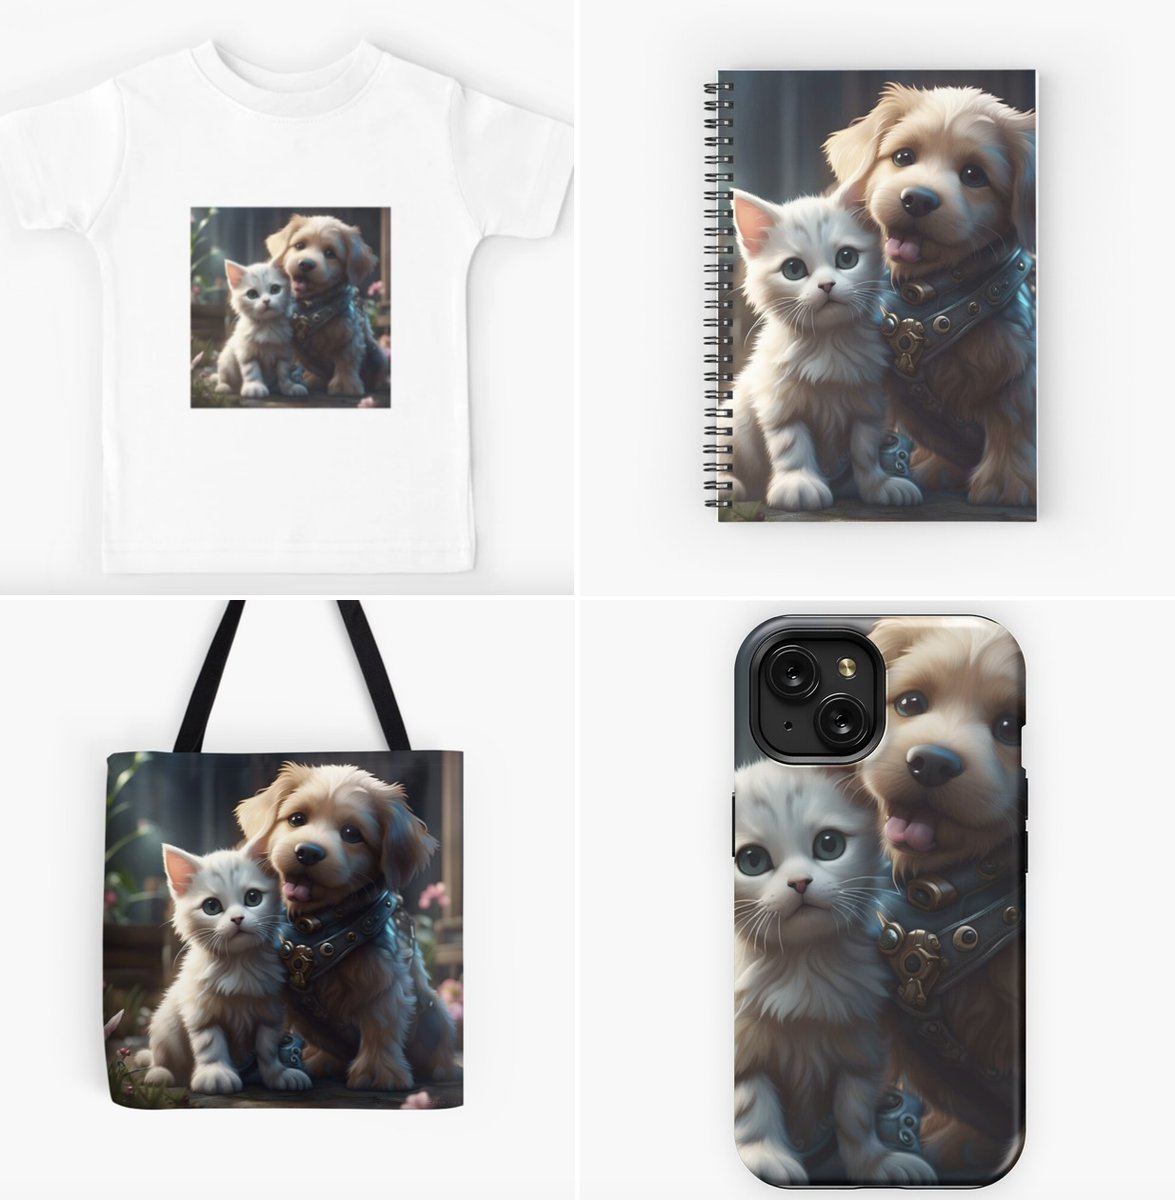 <#Friendship #Forever> #AICreation on #TShirt #iPhoneCase #ToteBag #SpiralNotebook on my #Redbubble & #teepublic

redbubble.com/shop/ap/159362…
teepublic.com/tote/58503500-…

#AIart #AIartist #digitalart #AIdesign #giftforher #giftforhim #giftforkids #catlover #doglover #kitten #pets #puppy